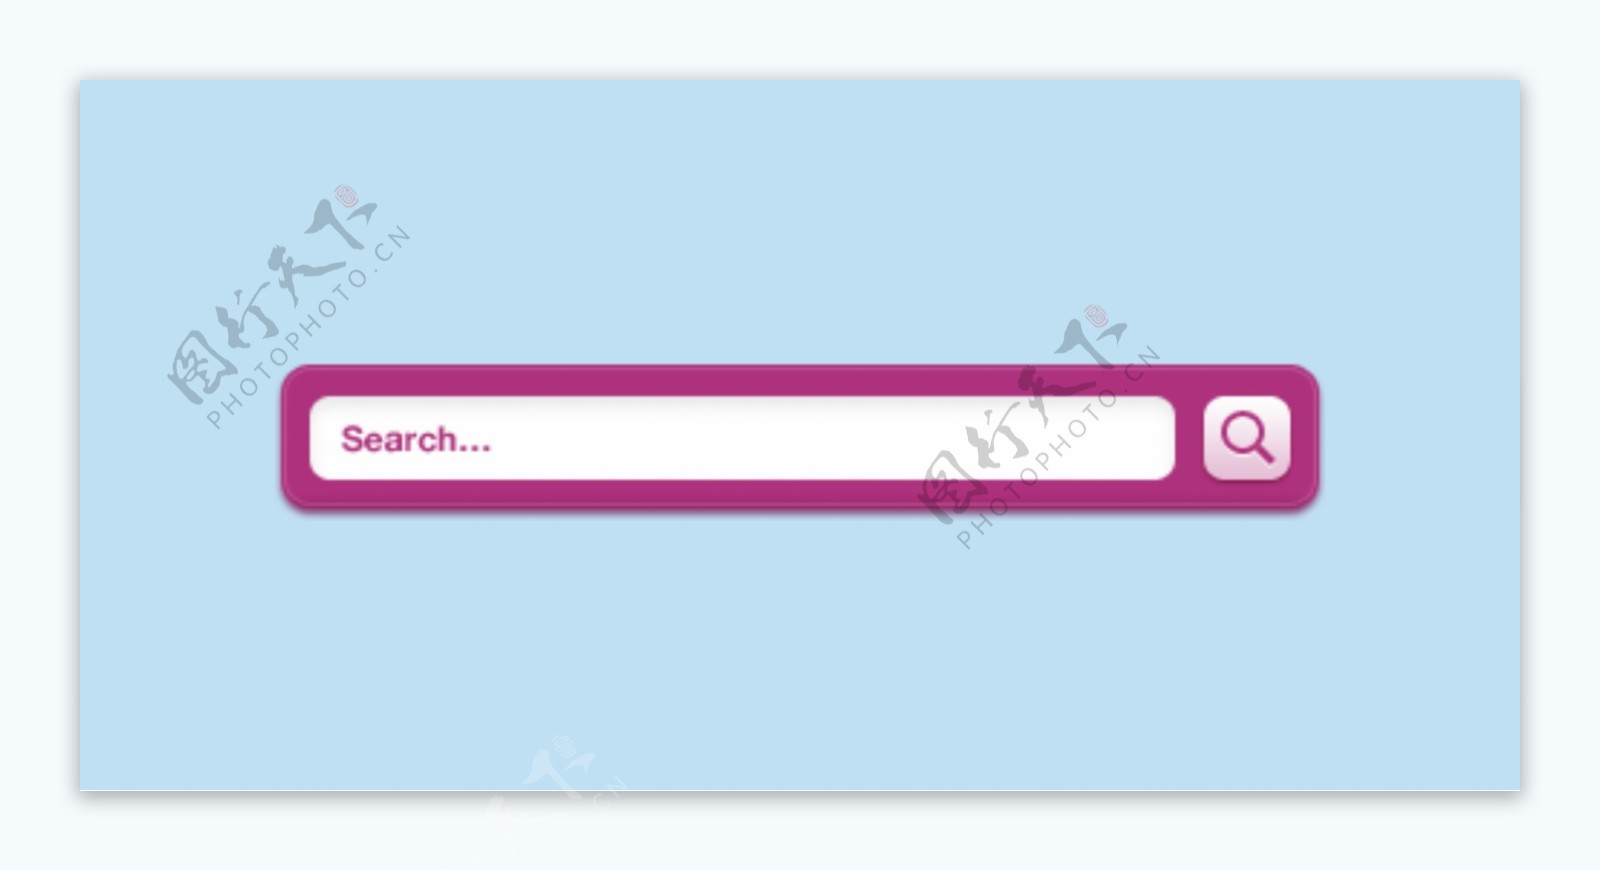 粉红色的充满活力的搜索界面PSD